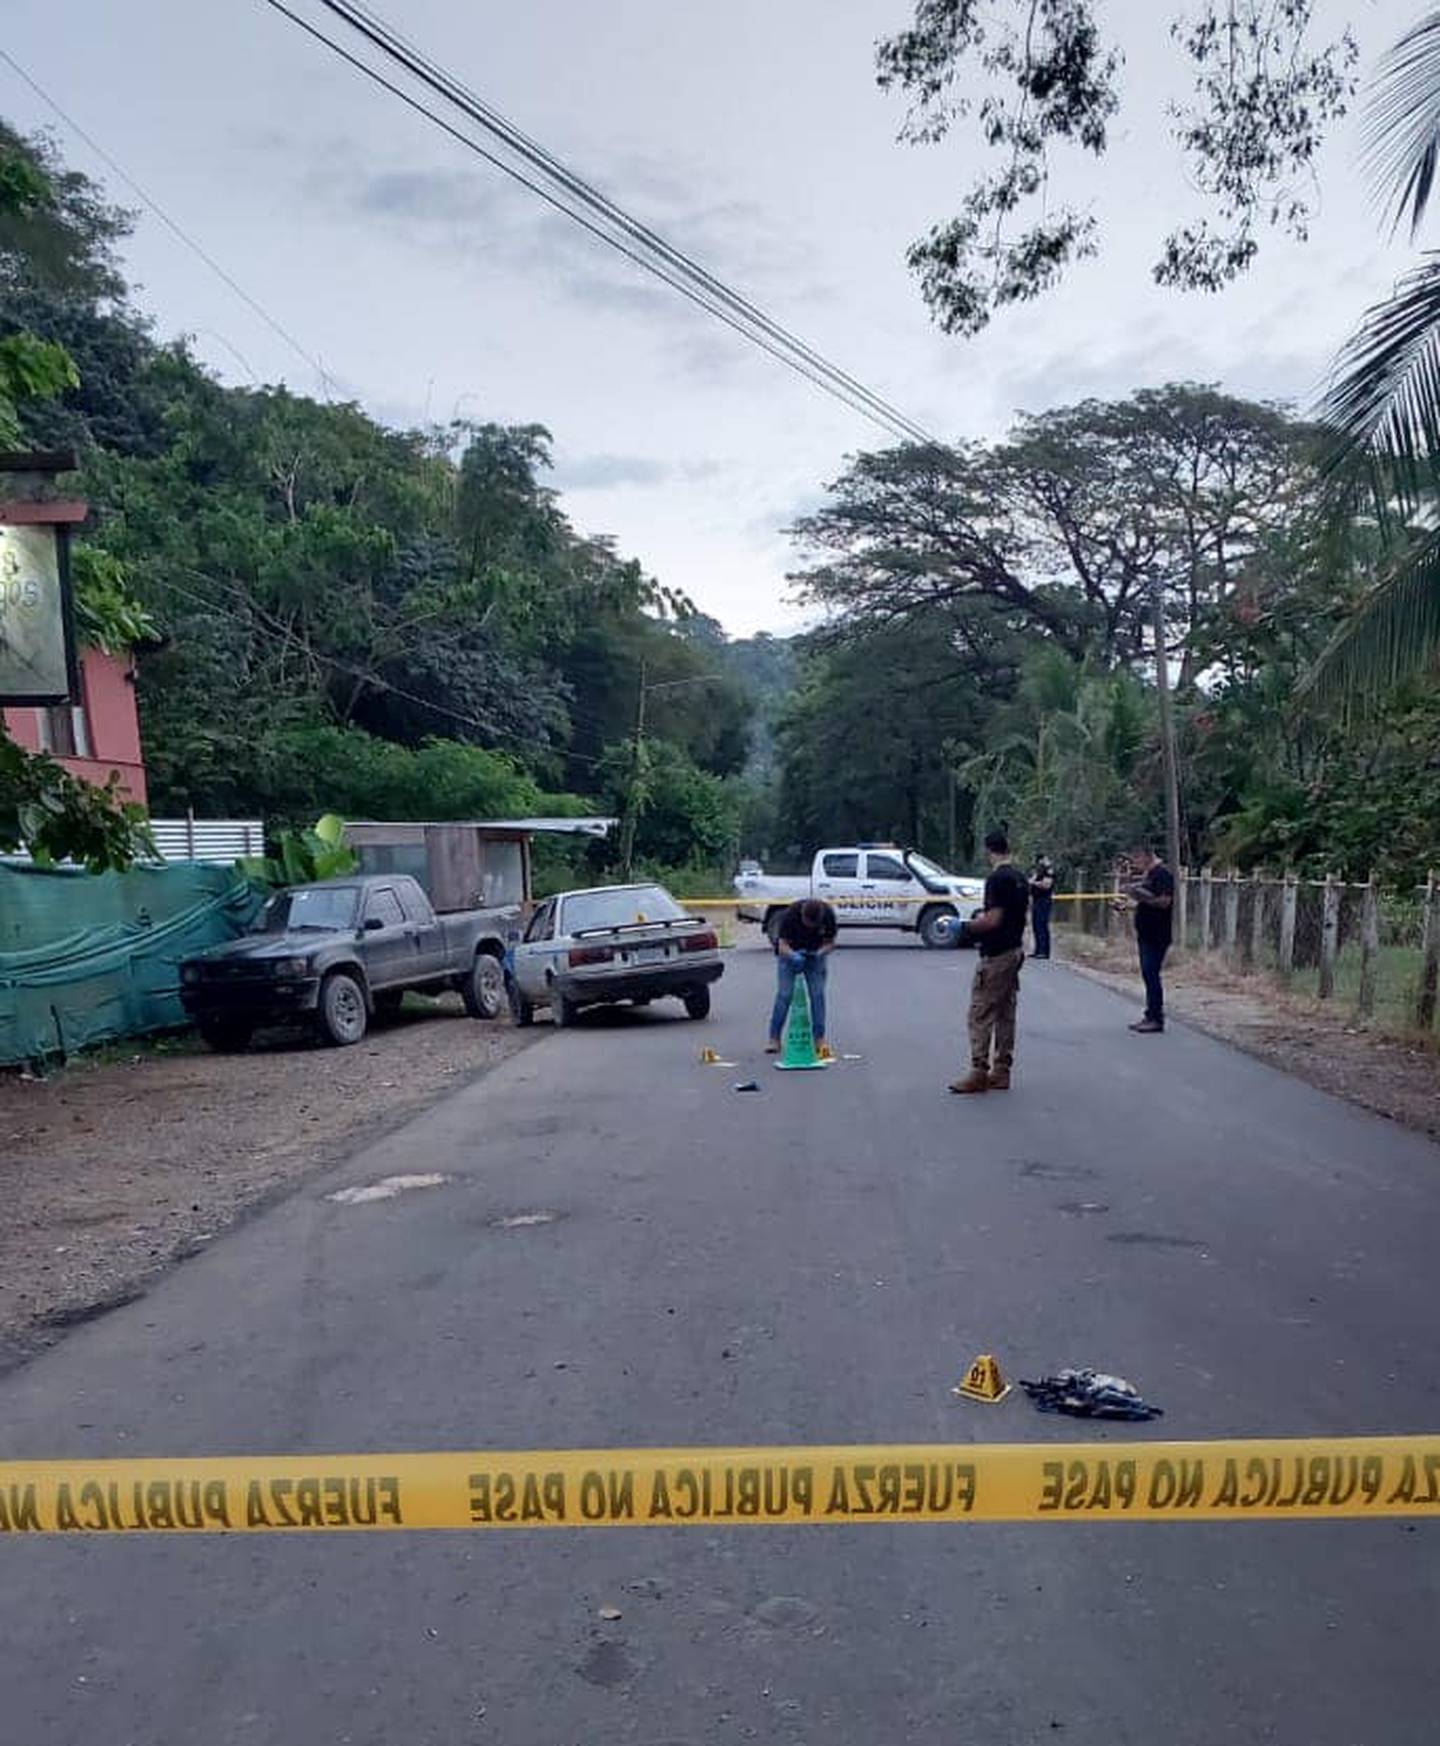 En los primeros 18 días de noviembre el OIJ contabiliza 52 homicidios. En la foto el ocurrido este viernes en un bar de Nosara, Guanacaste, donde también quedaron cuatro heridos. Foto: Cortesía Guana/Noticias.